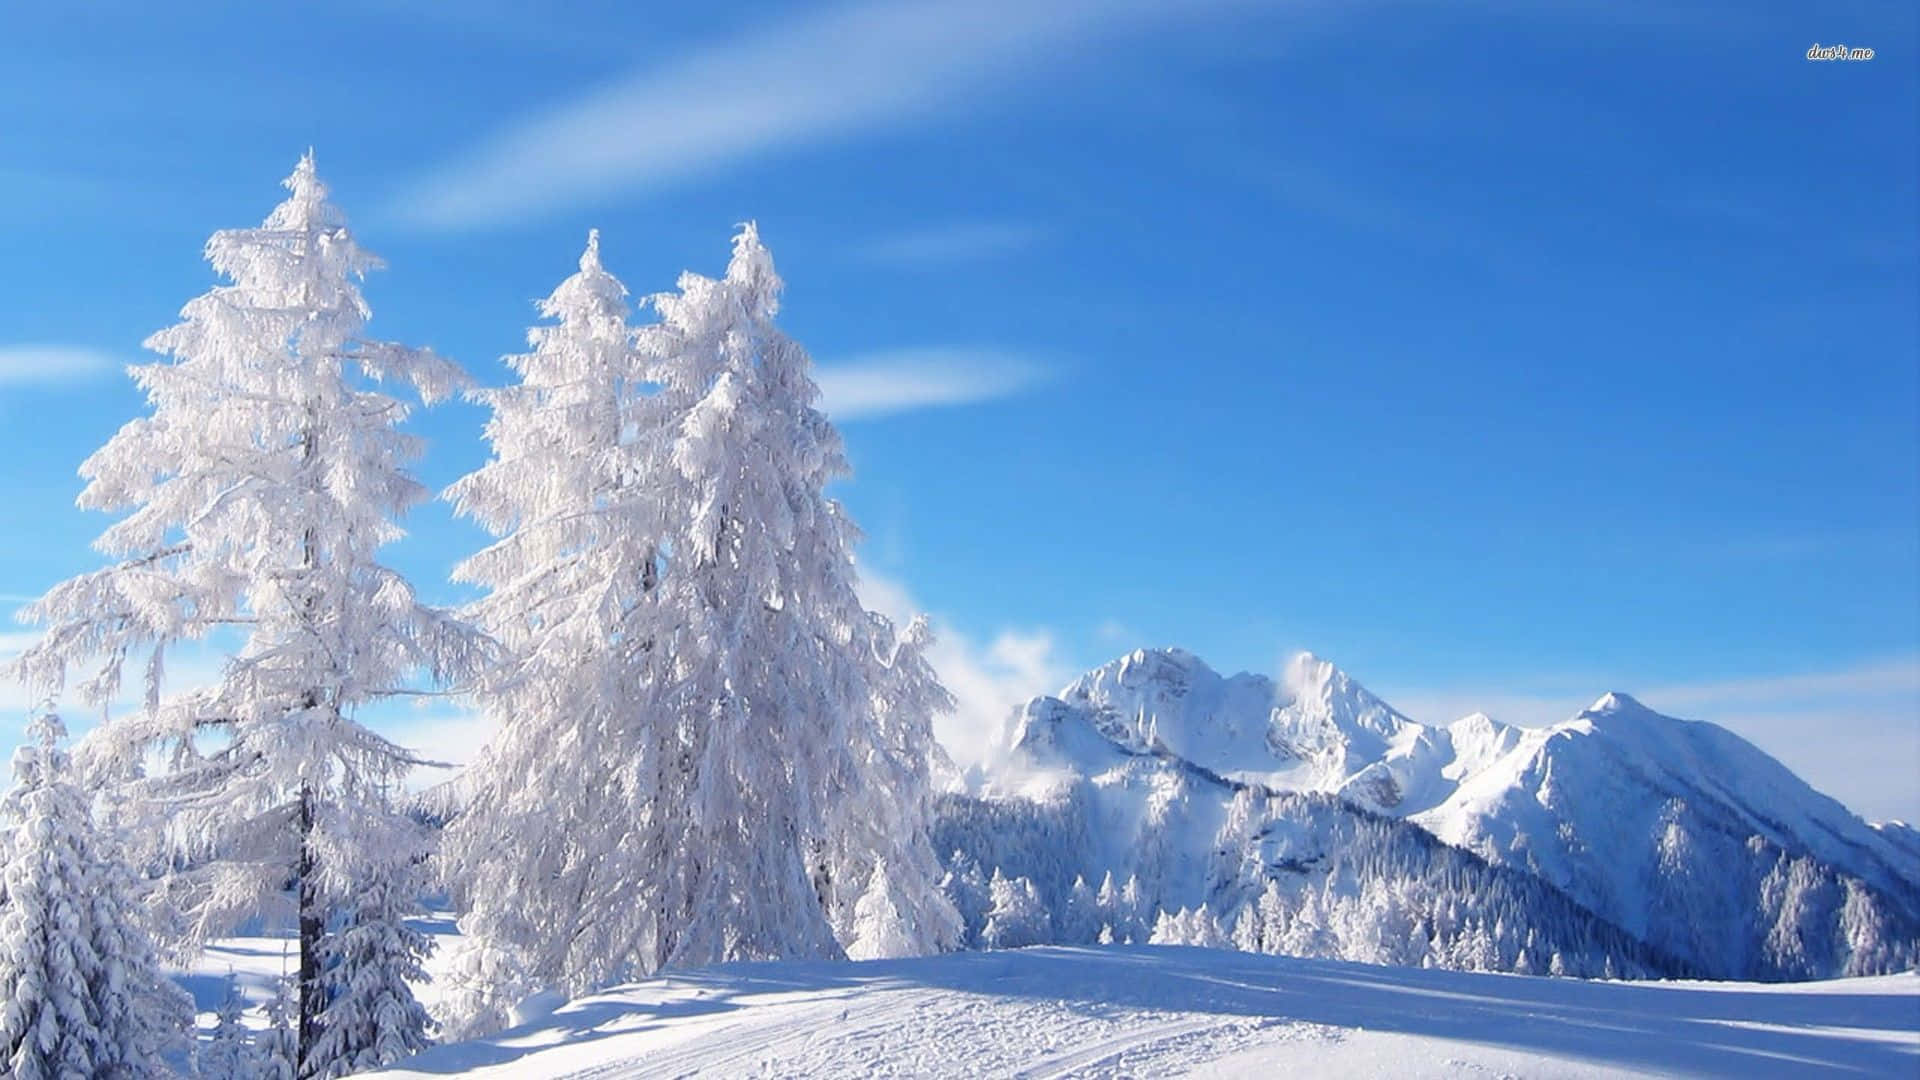 A white winter wonderland